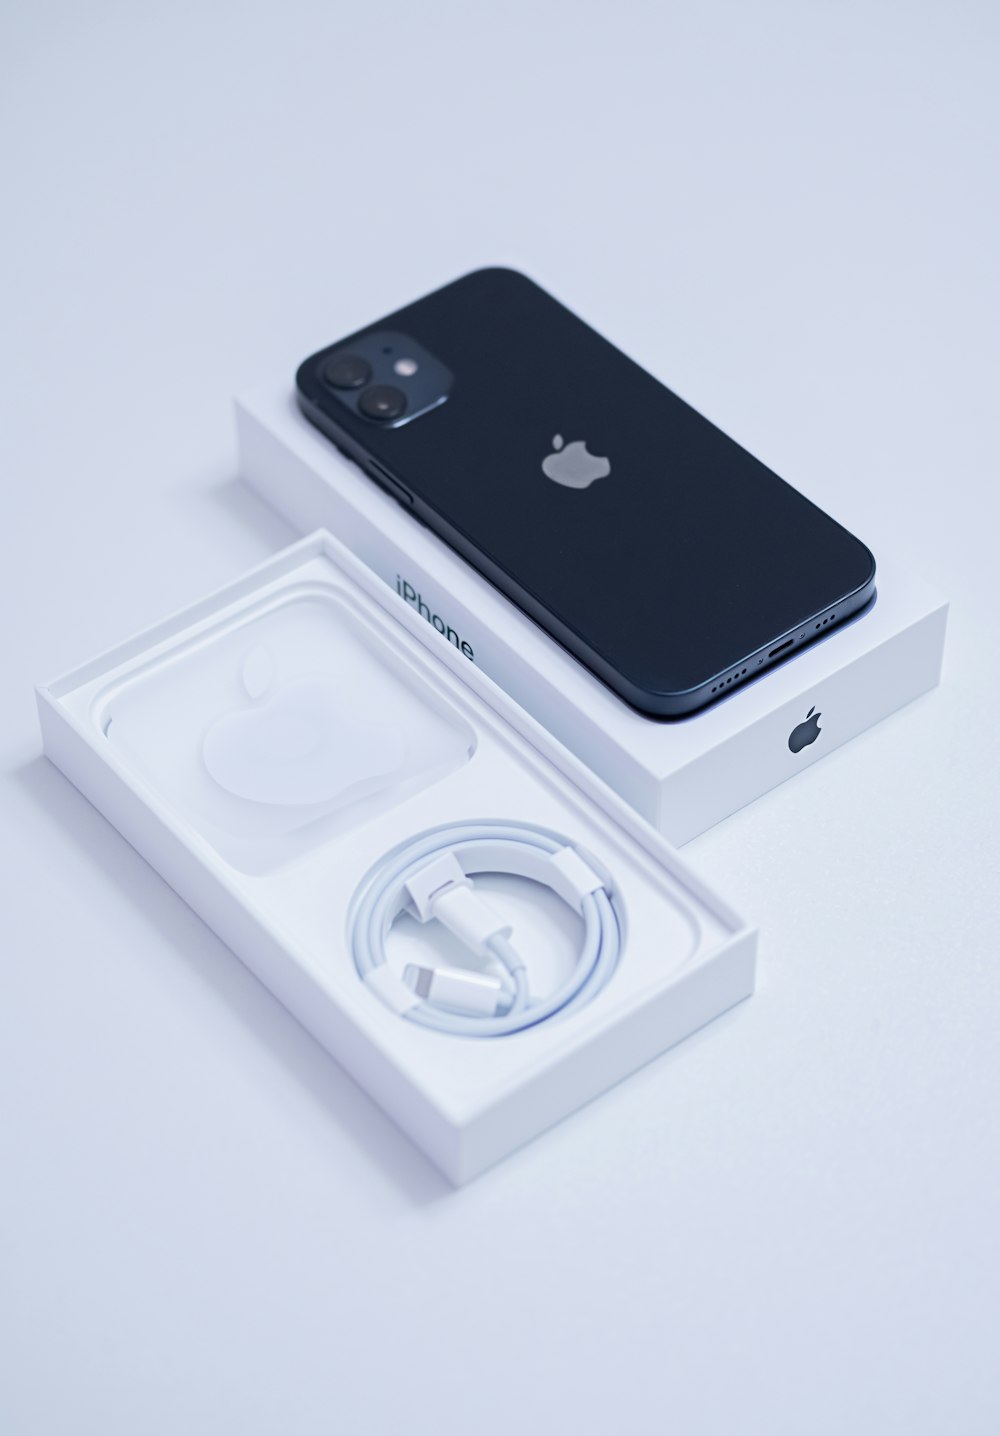 Schwarzes iPhone 7 auf weißer Box